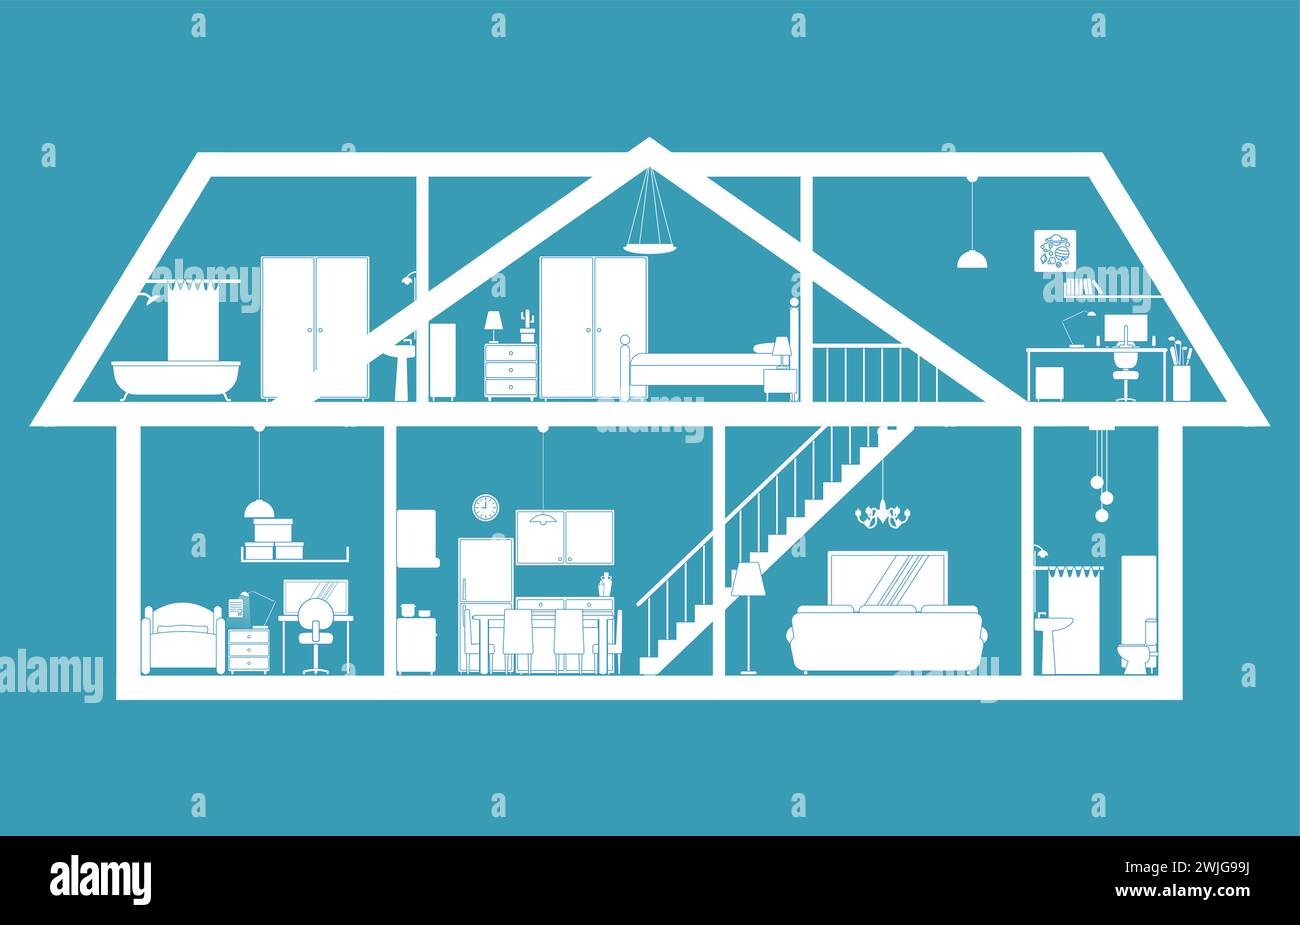 Plan du niveau inférieur et du grenier d'une résidence en vue transversale Illustration de Vecteur